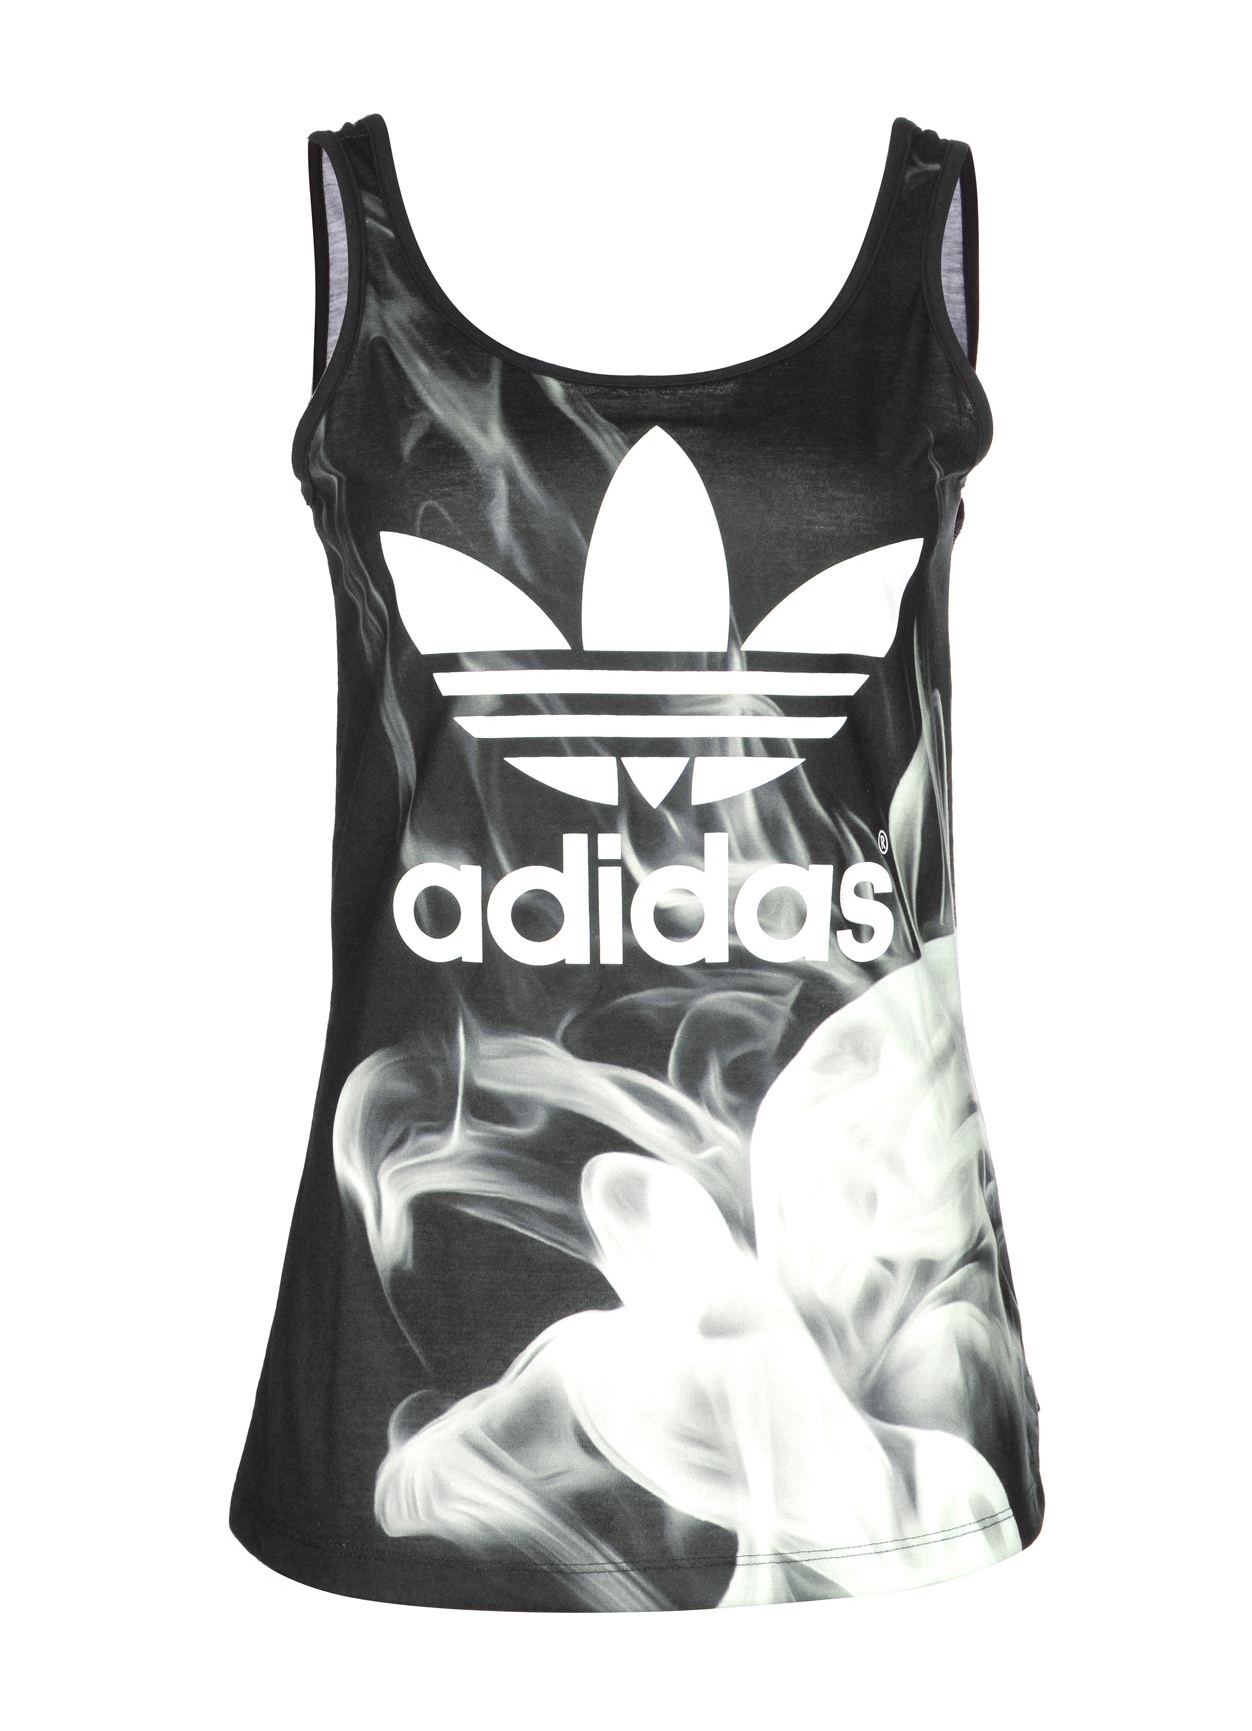 Adidas Originals Camiseta White Layr Tank Rita (negro)